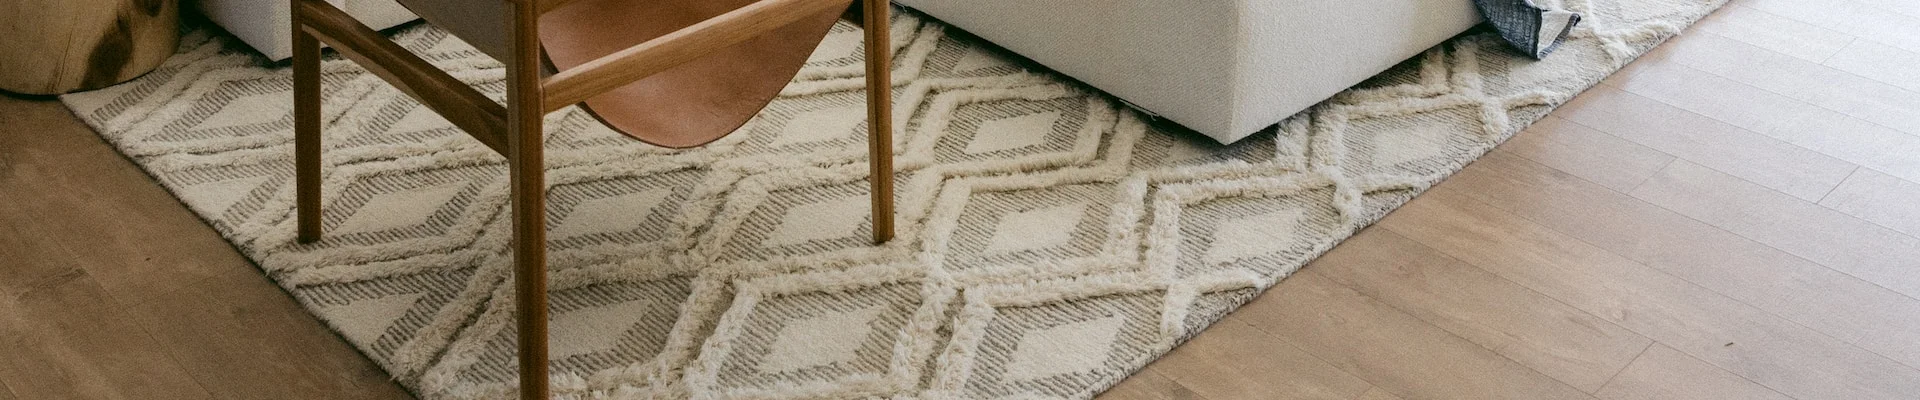 Pioneer Floor Covering & Design Center has Utah's best selection of custom area rugs